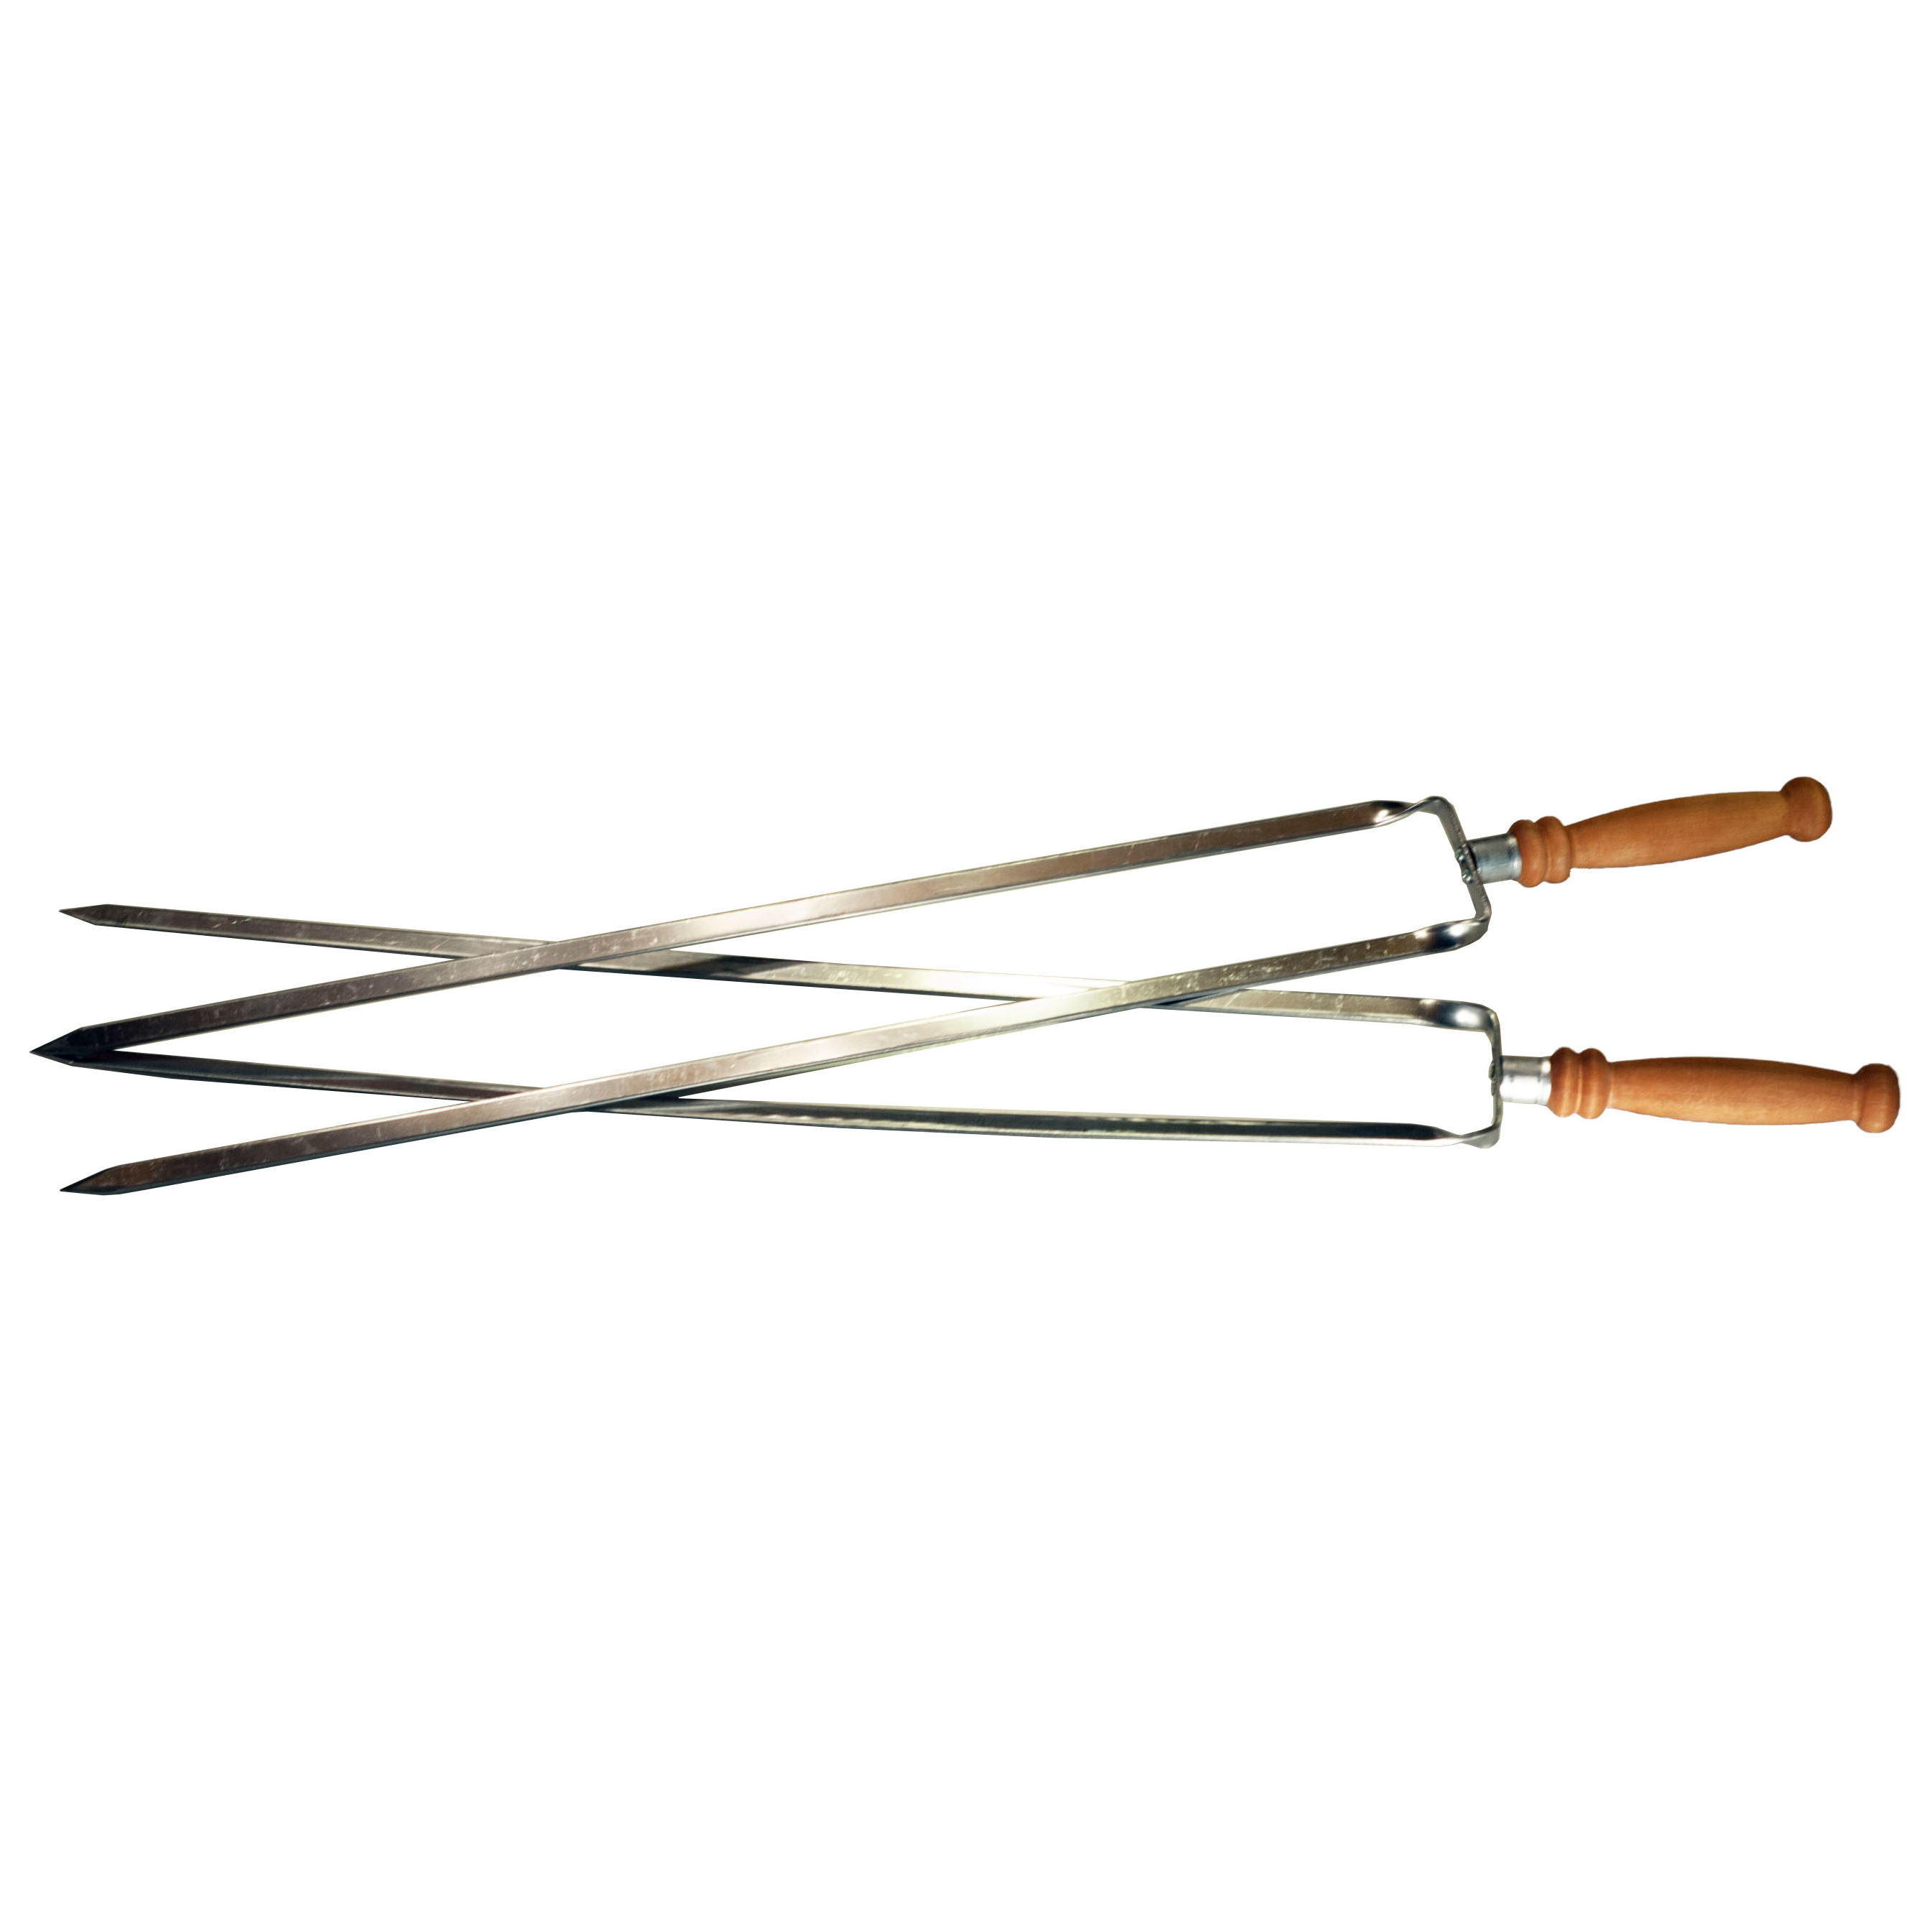 Шампур двойной с деревянной ручкой Аск-38 (14065) шампур двойной kovmangal с деревянной ручкой 45 см